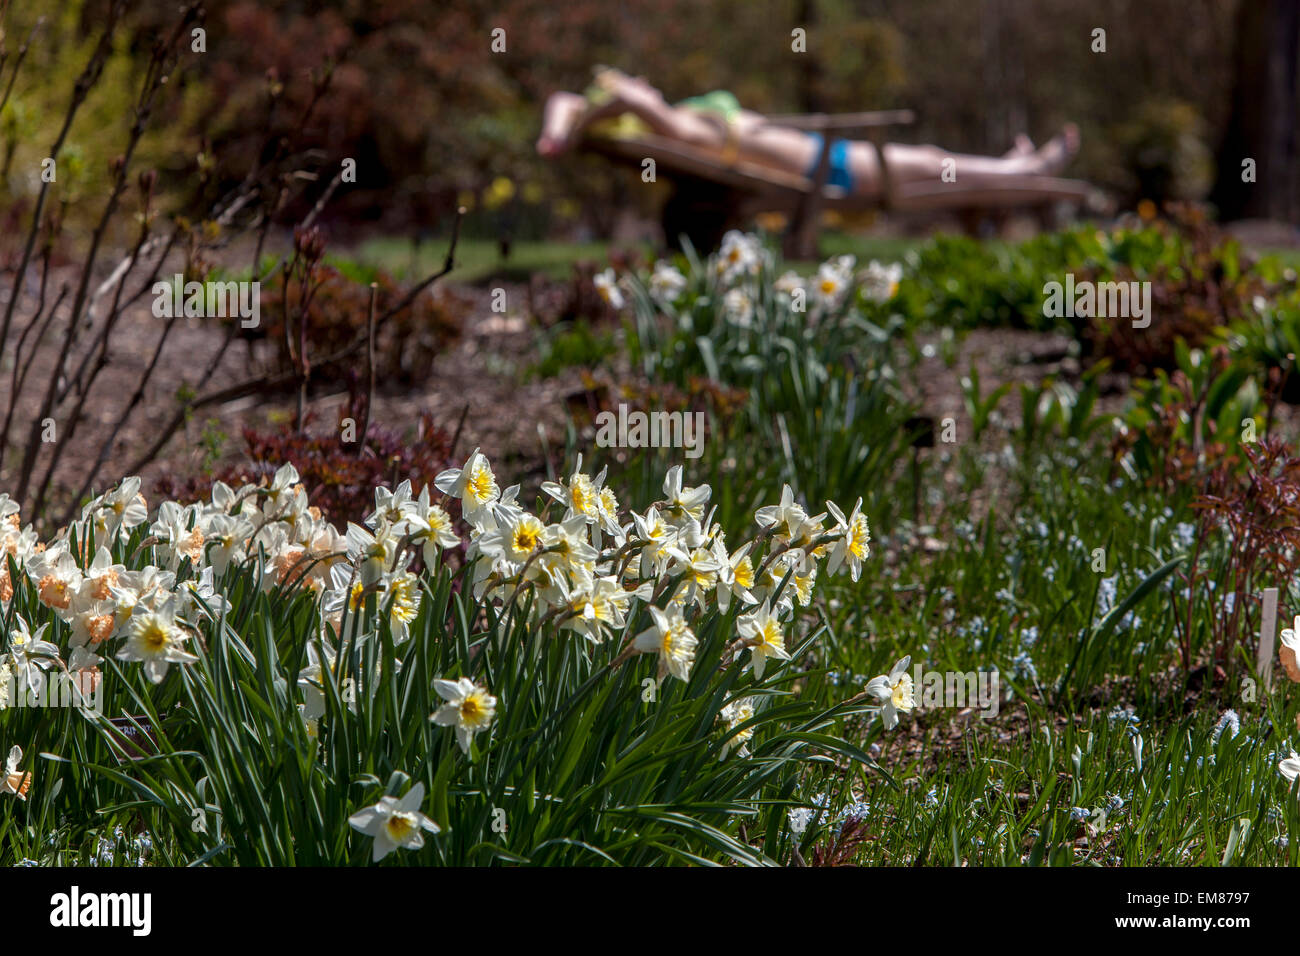 Frühling Garten Blumen Rasen und Sonnenbaden Frau Narzissen Garten Blumenbeet Ruhe im April Garten Frau entspannender Garten Rast Stockfoto